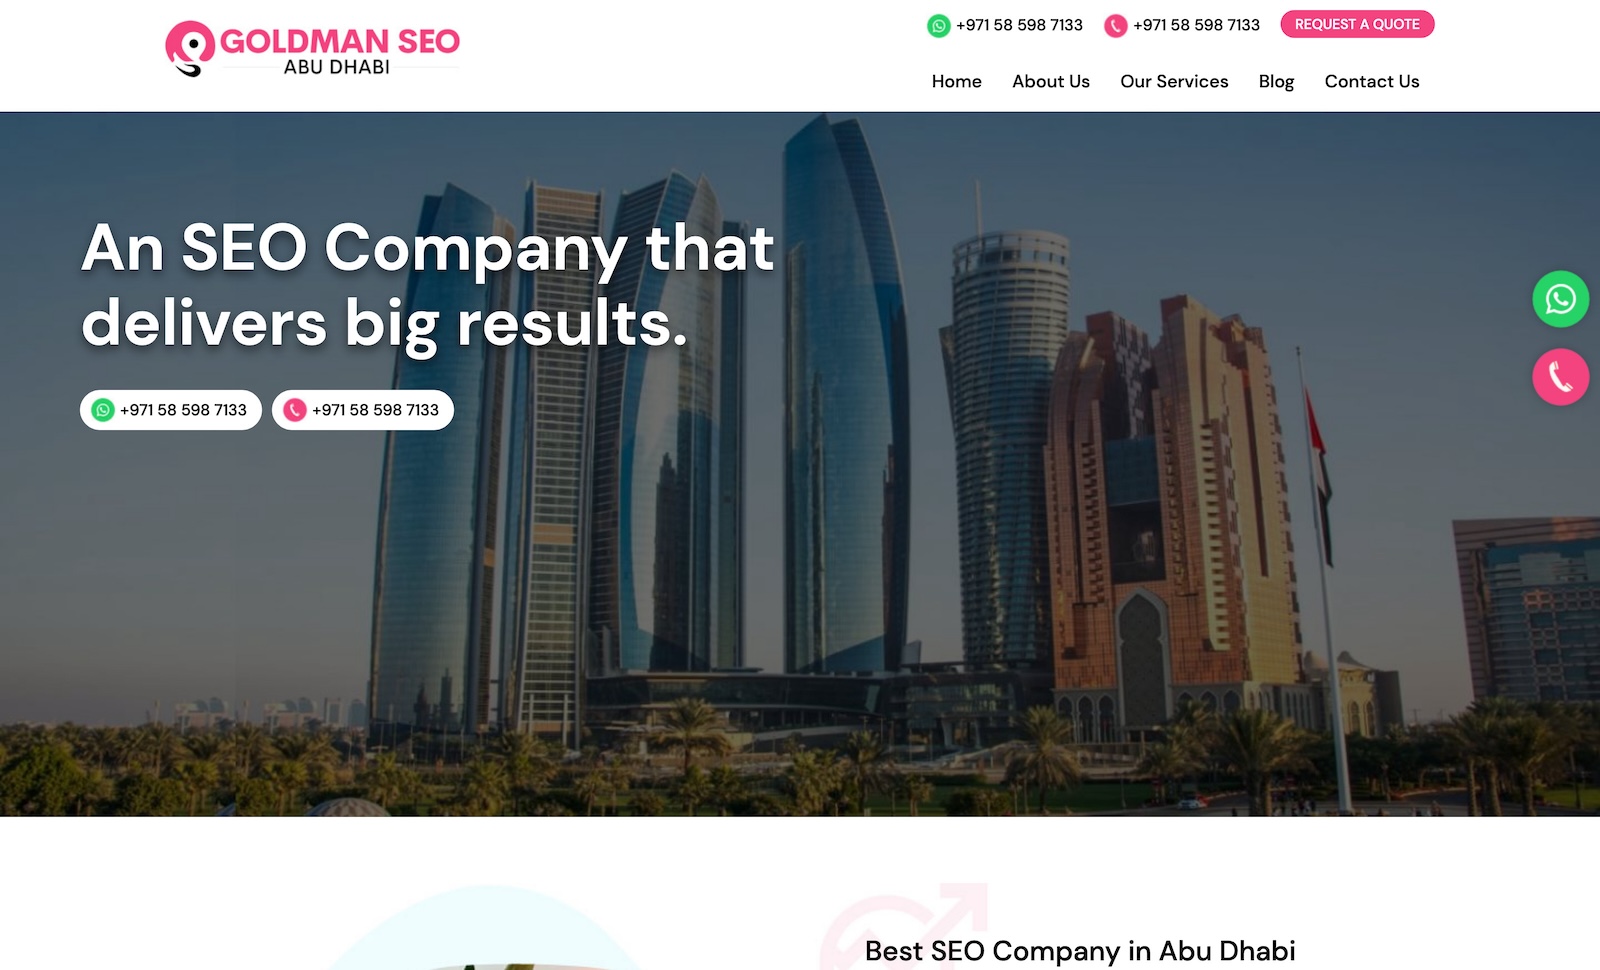 Goldman SEO Abu Dhabi